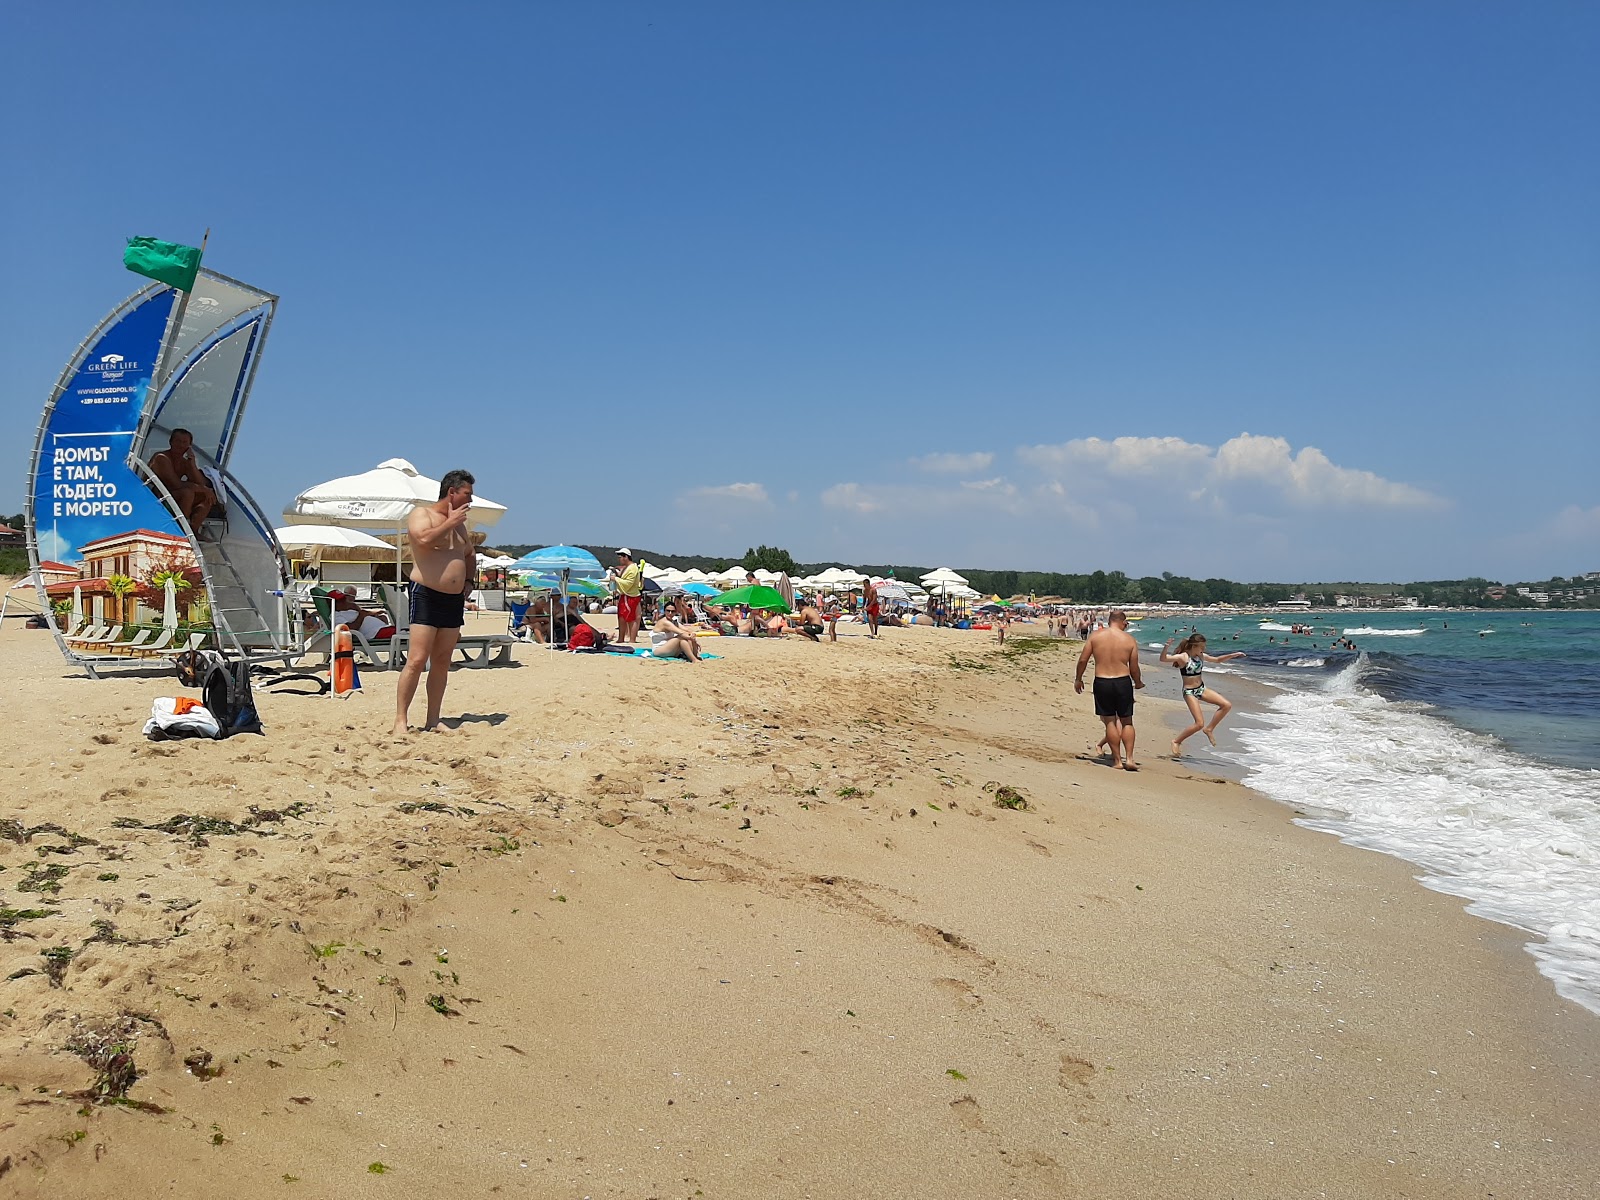 Photo de Smokinya beach - endroit populaire parmi les connaisseurs de la détente